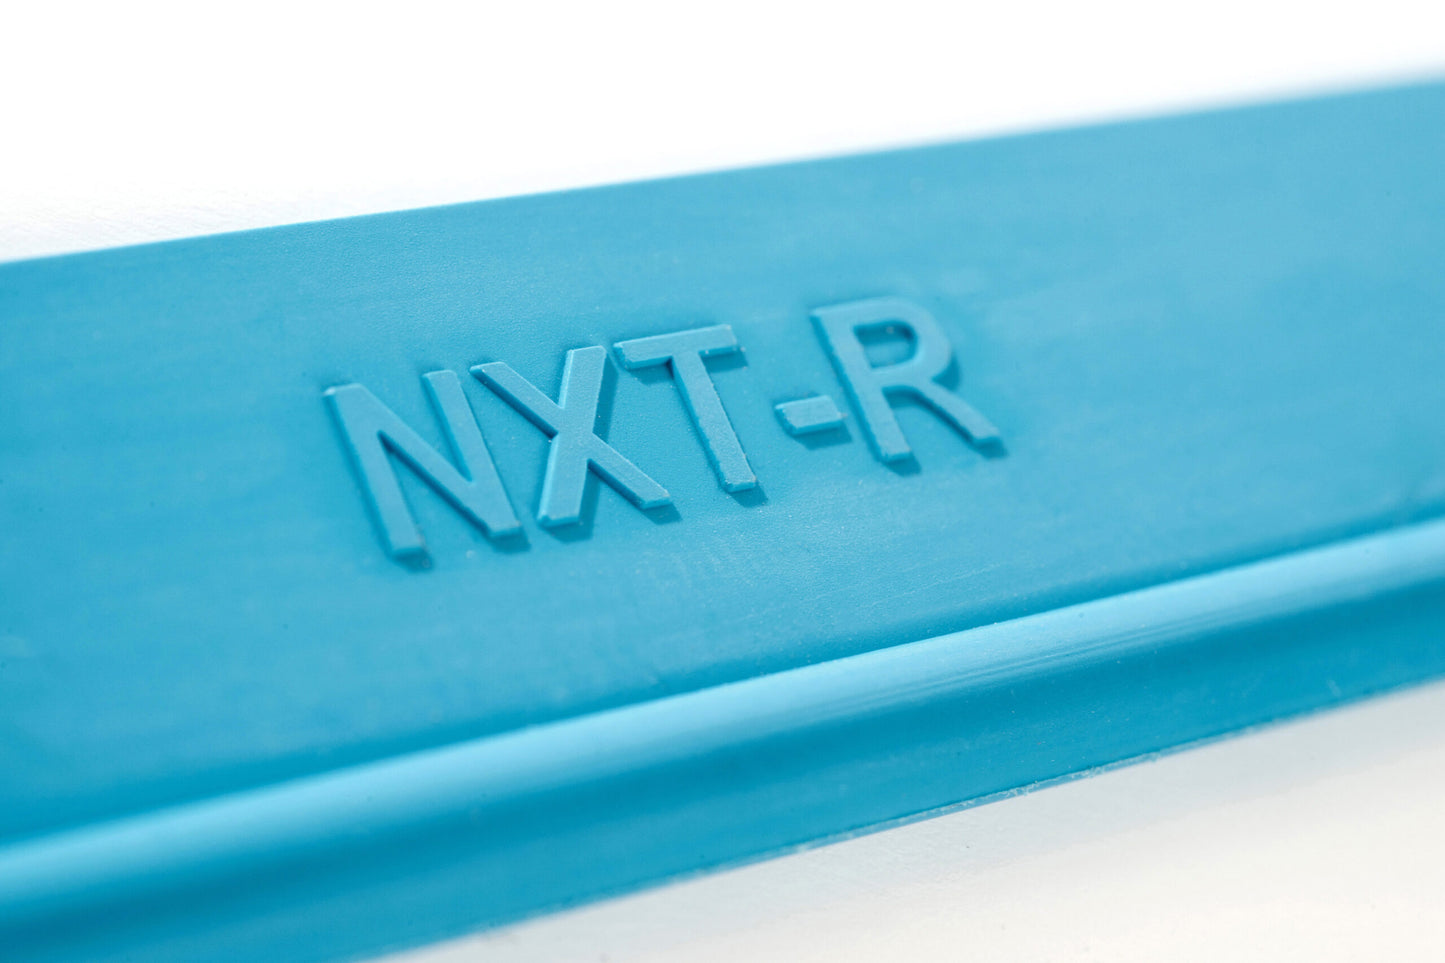 Utbytesgummiblad NXTR till Moerman Liquidator fonsterskrapa - hög kvalitet